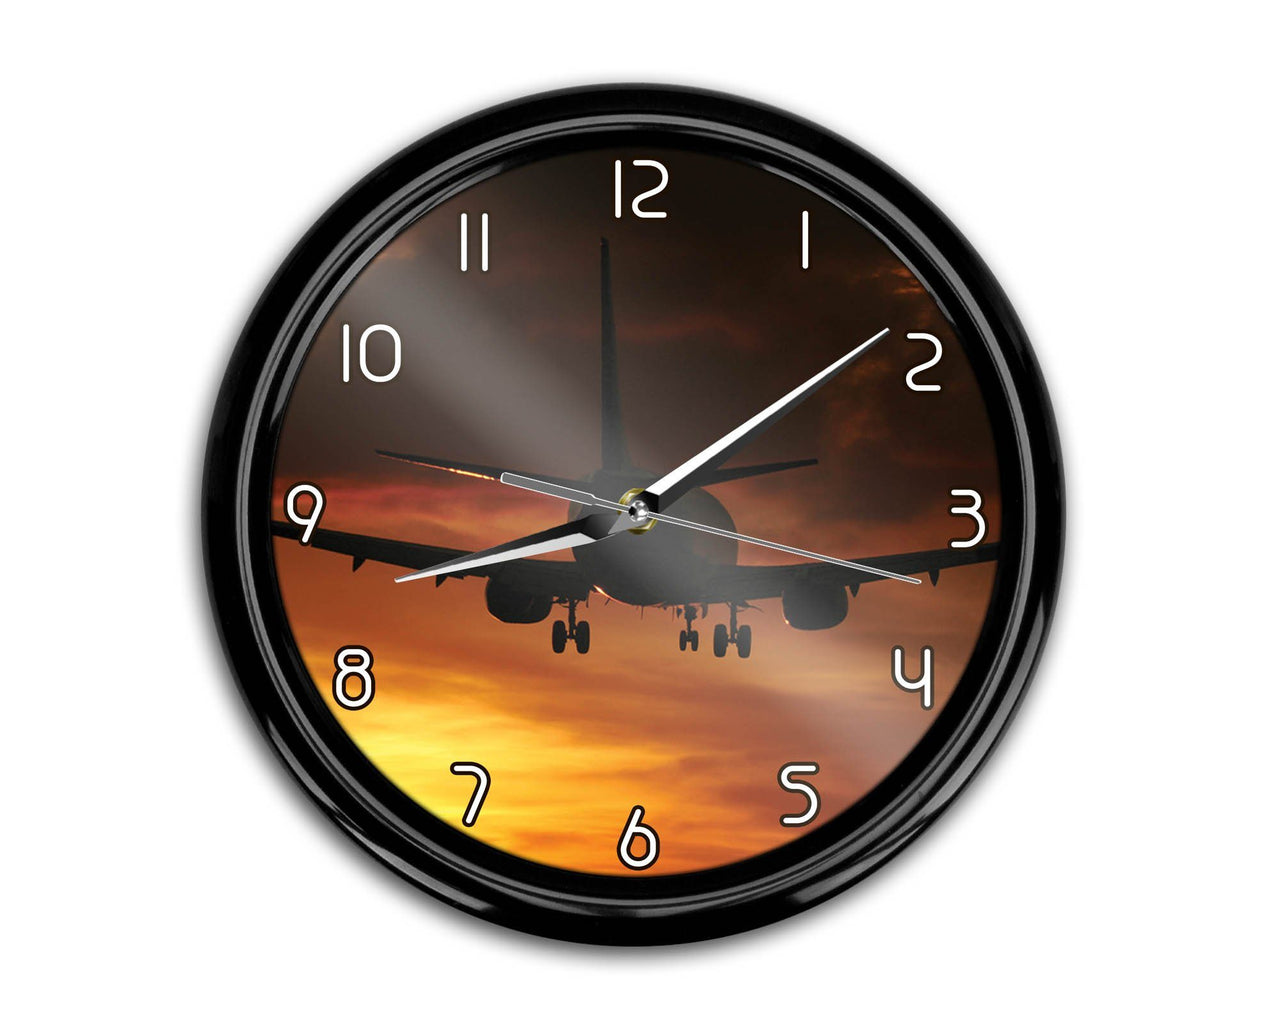 Beautiful Aircraft Landing at Sunset Printed Wall Clocks Aviation Shop 